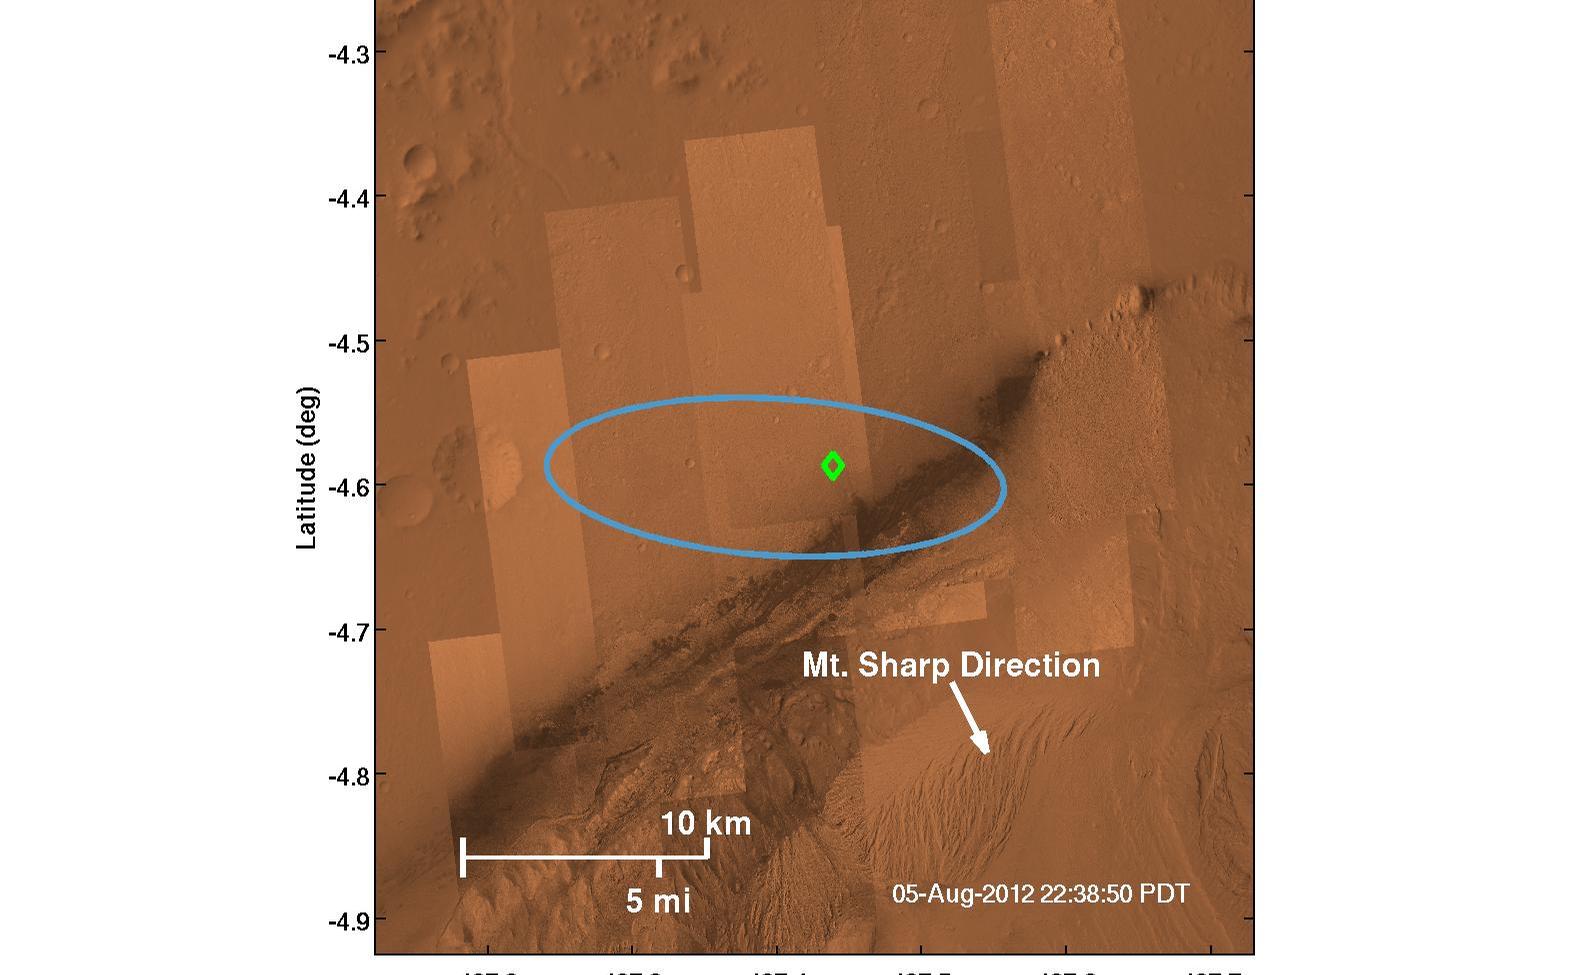 Where Curiosity Landed on Mars